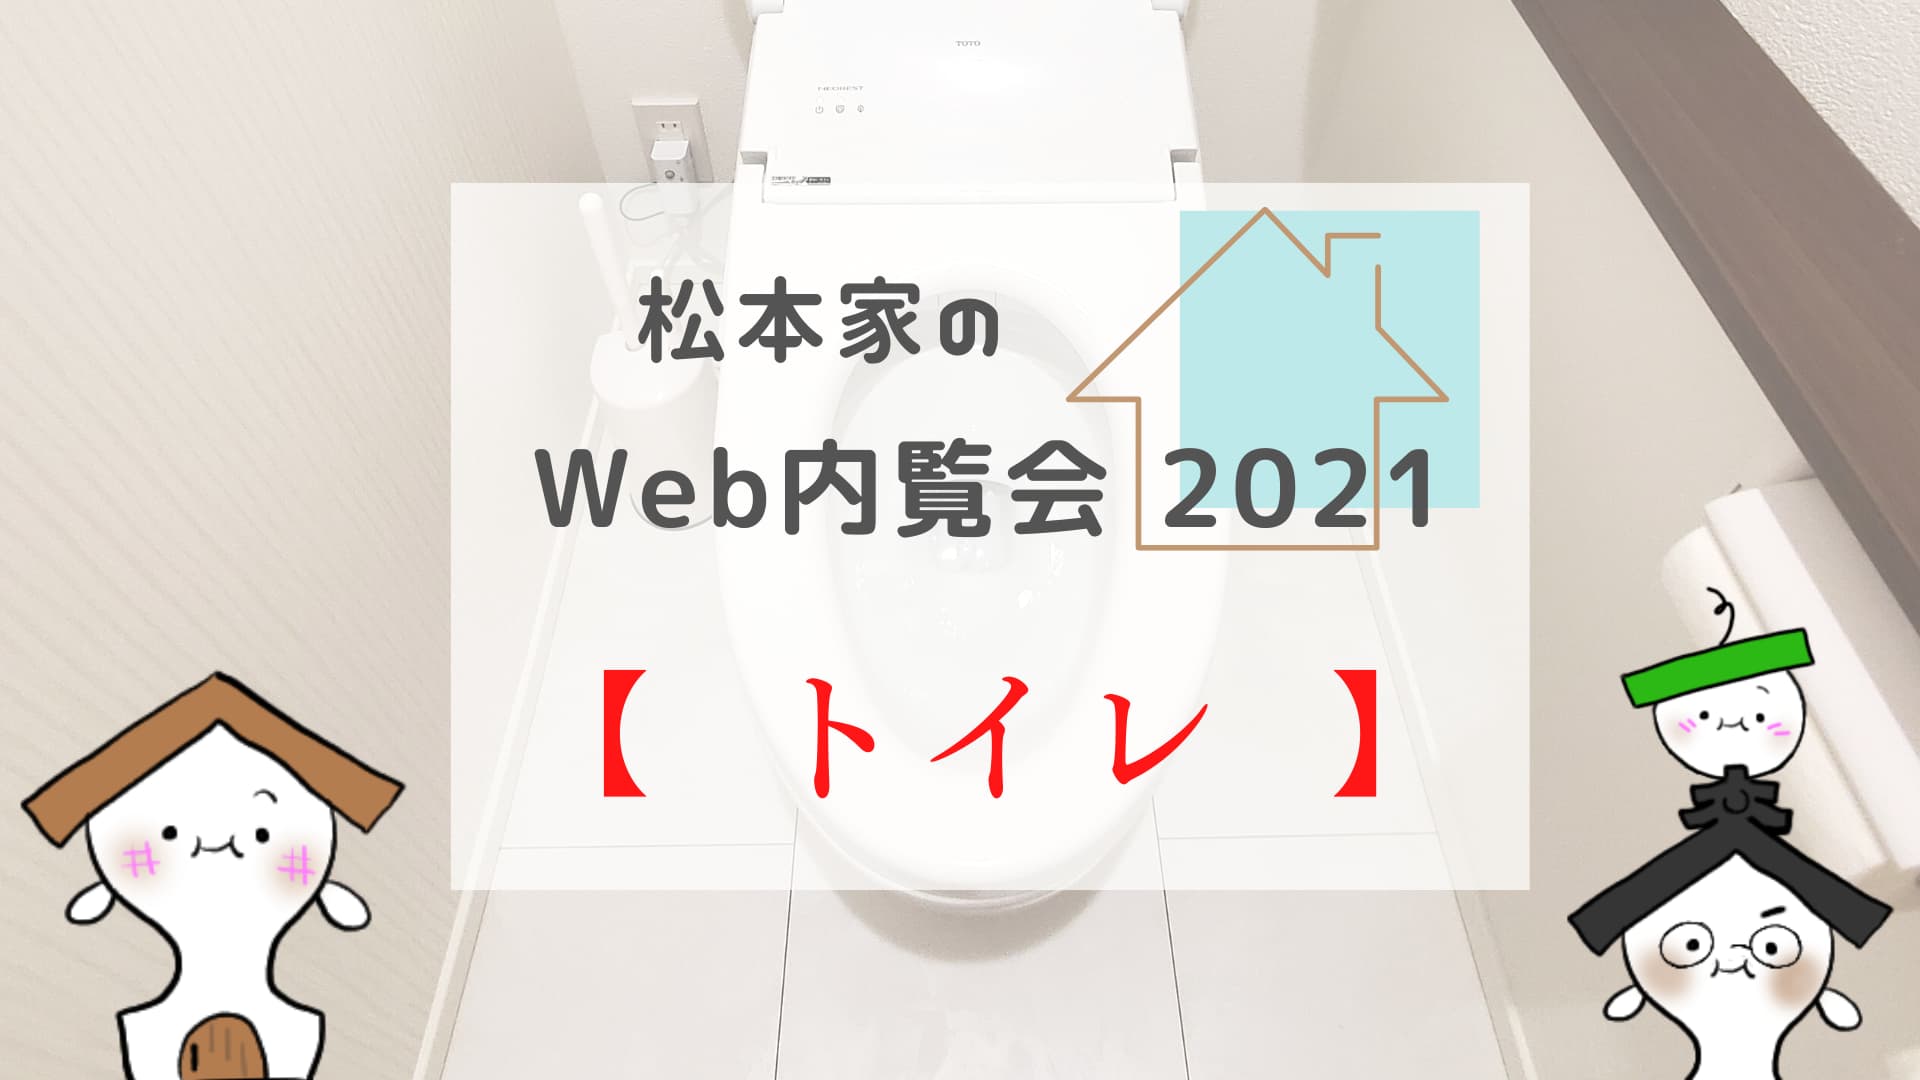 松本家のWeb内覧会 2021 【1,2階のトイレ】